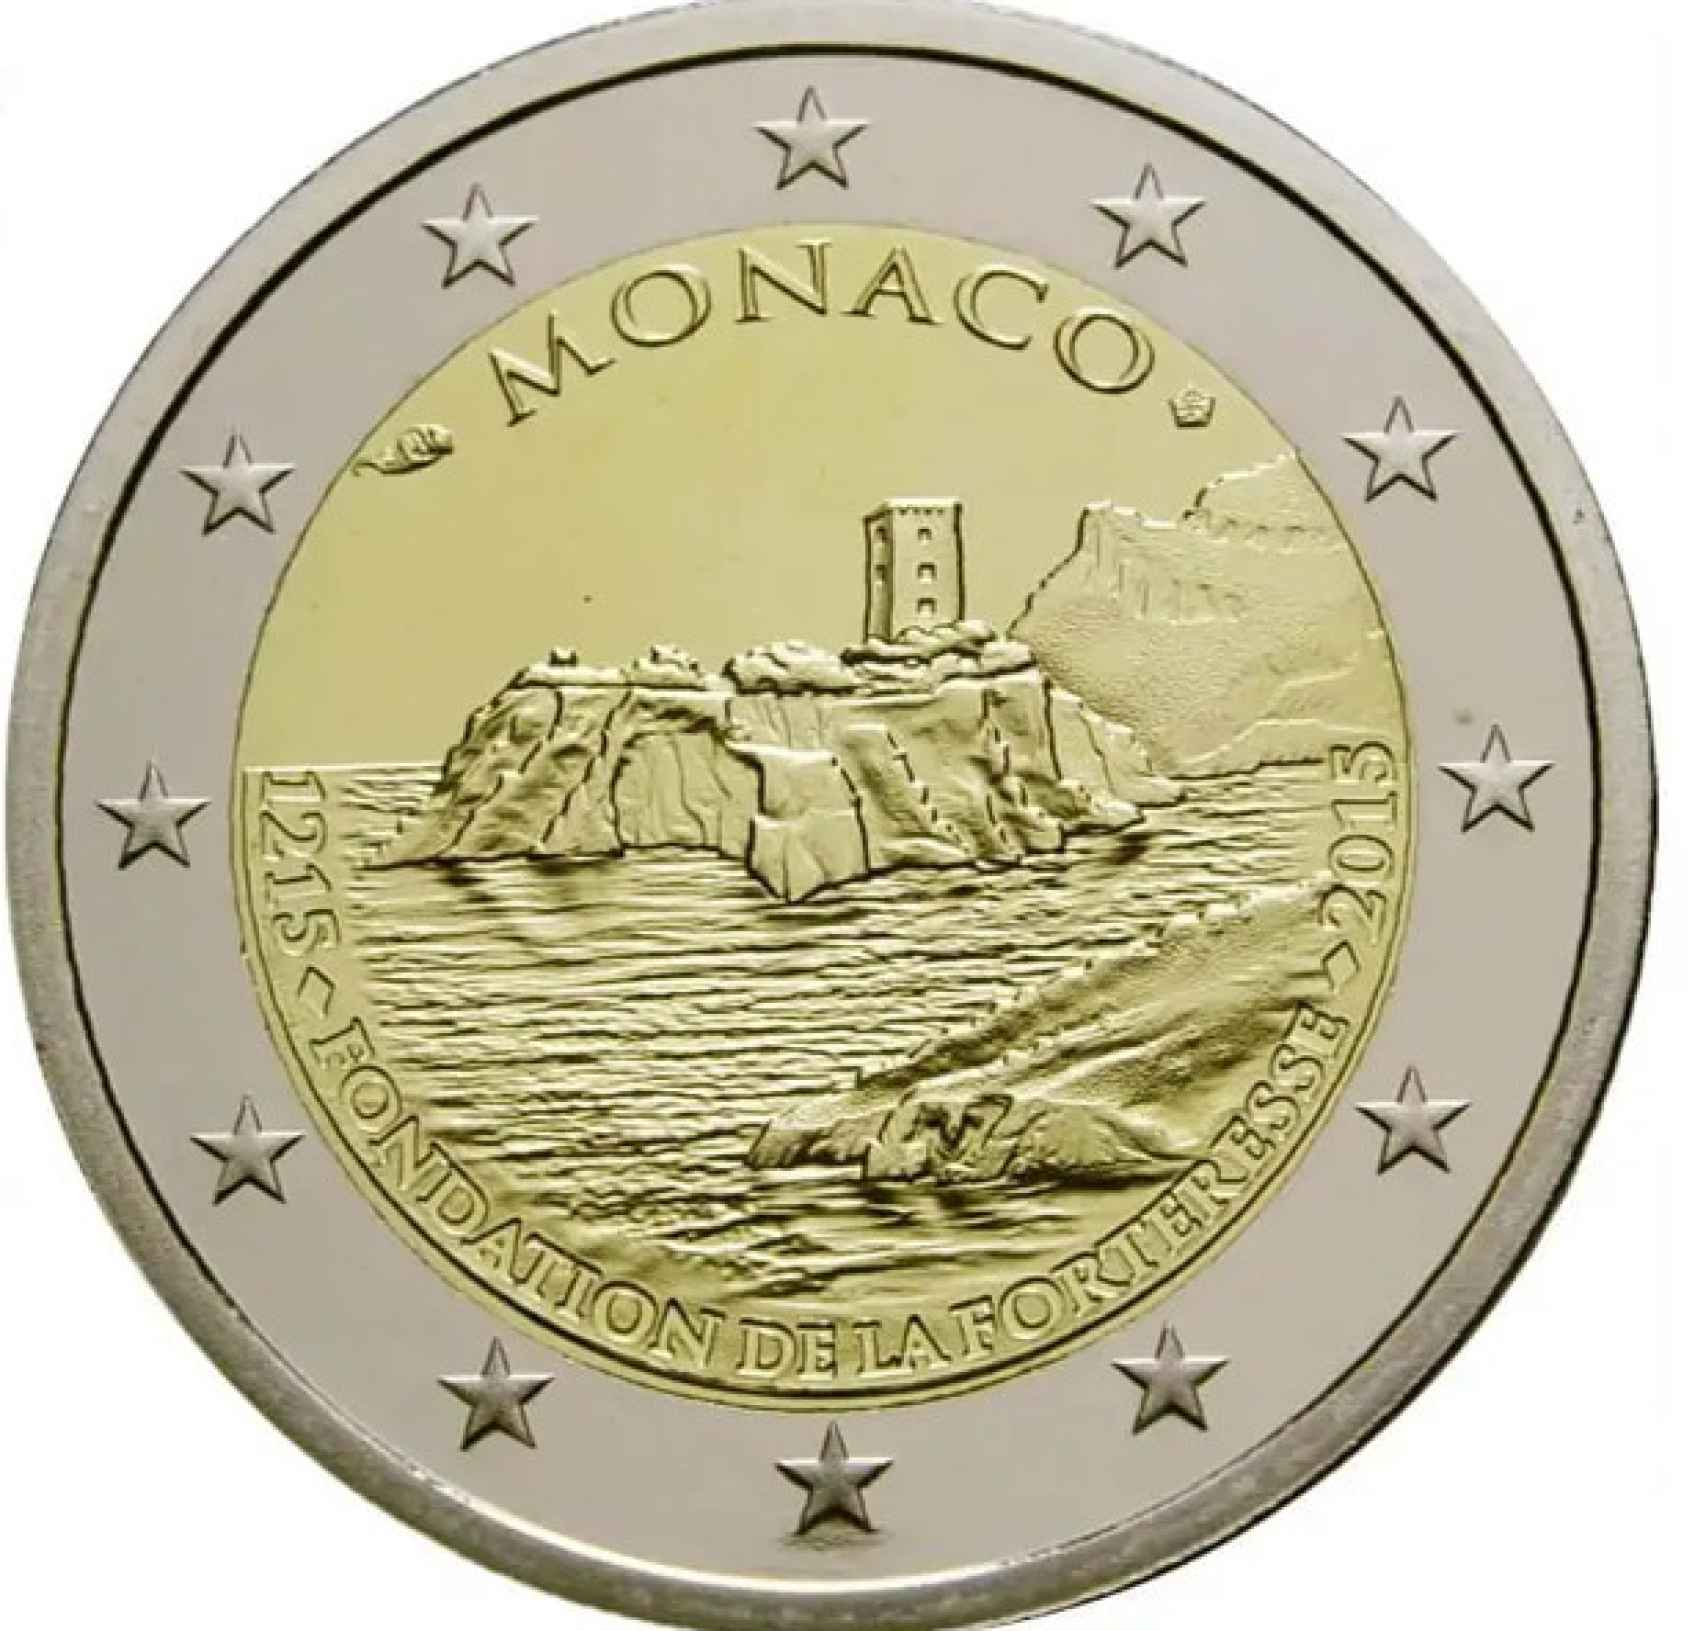 Moneda de Mónaco del año 2015.